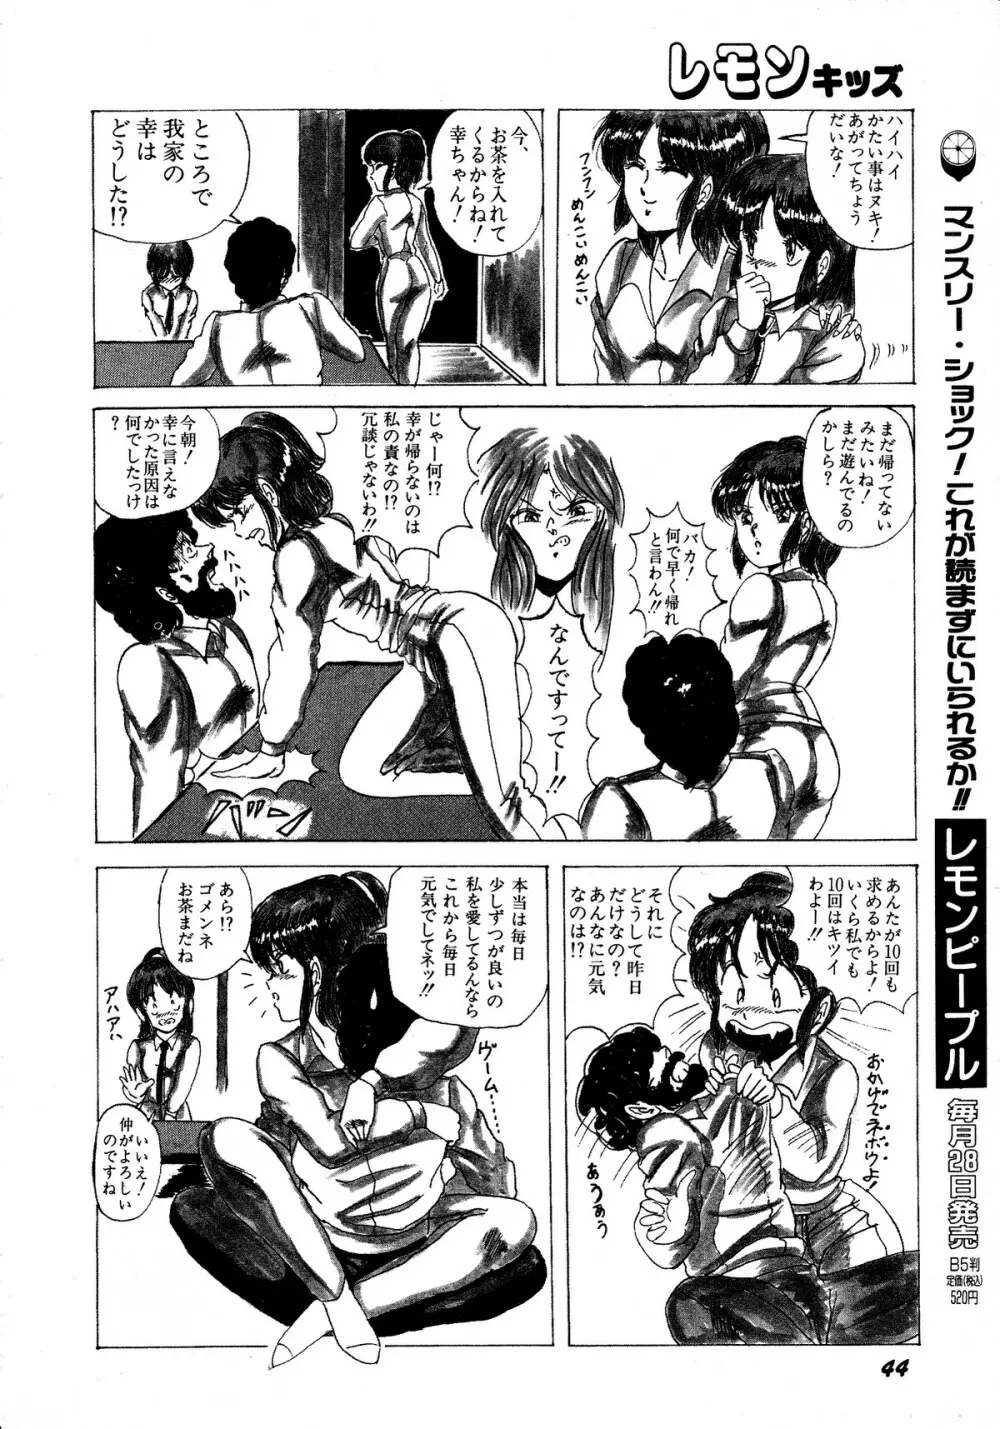 レモンキッズ No.12 44ページ